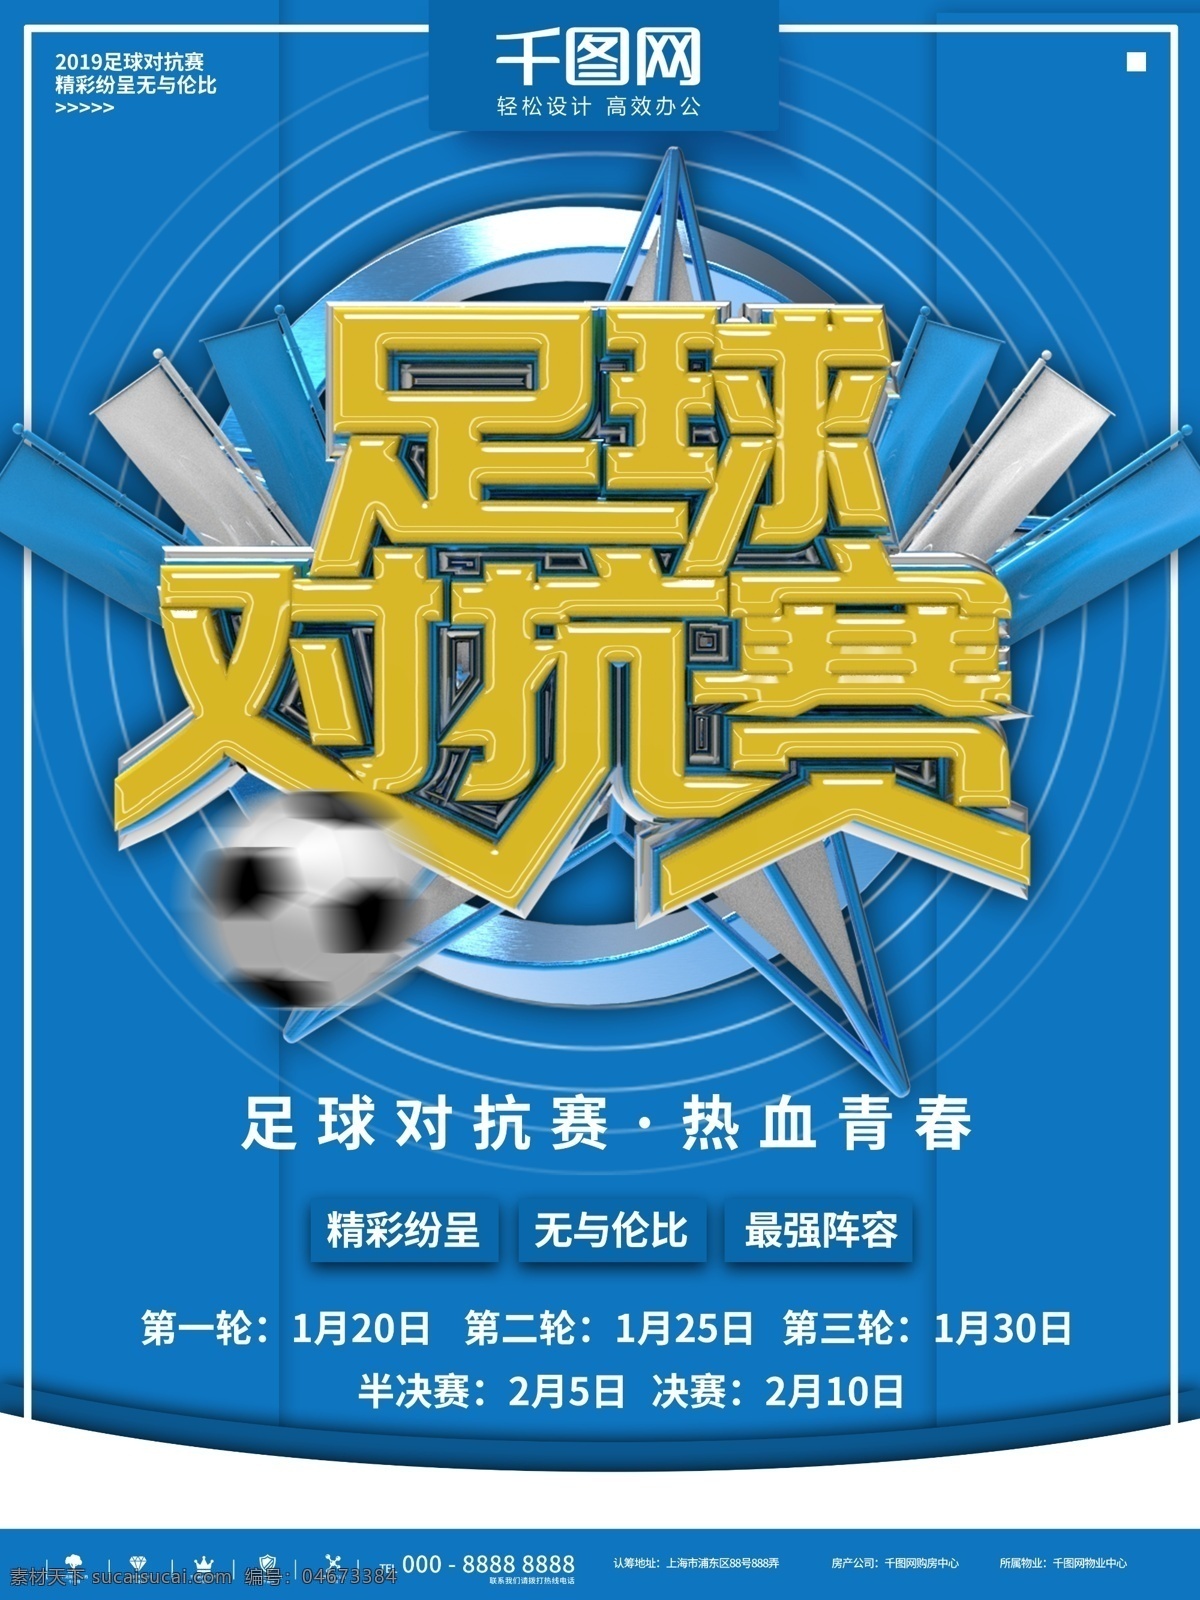 蓝色 简约 足球 对抗赛 商业 宣传海报 大气 运动 企业 黄色 立体 体育 健身 活动 宣传 比赛 团建 青春 学校 公司